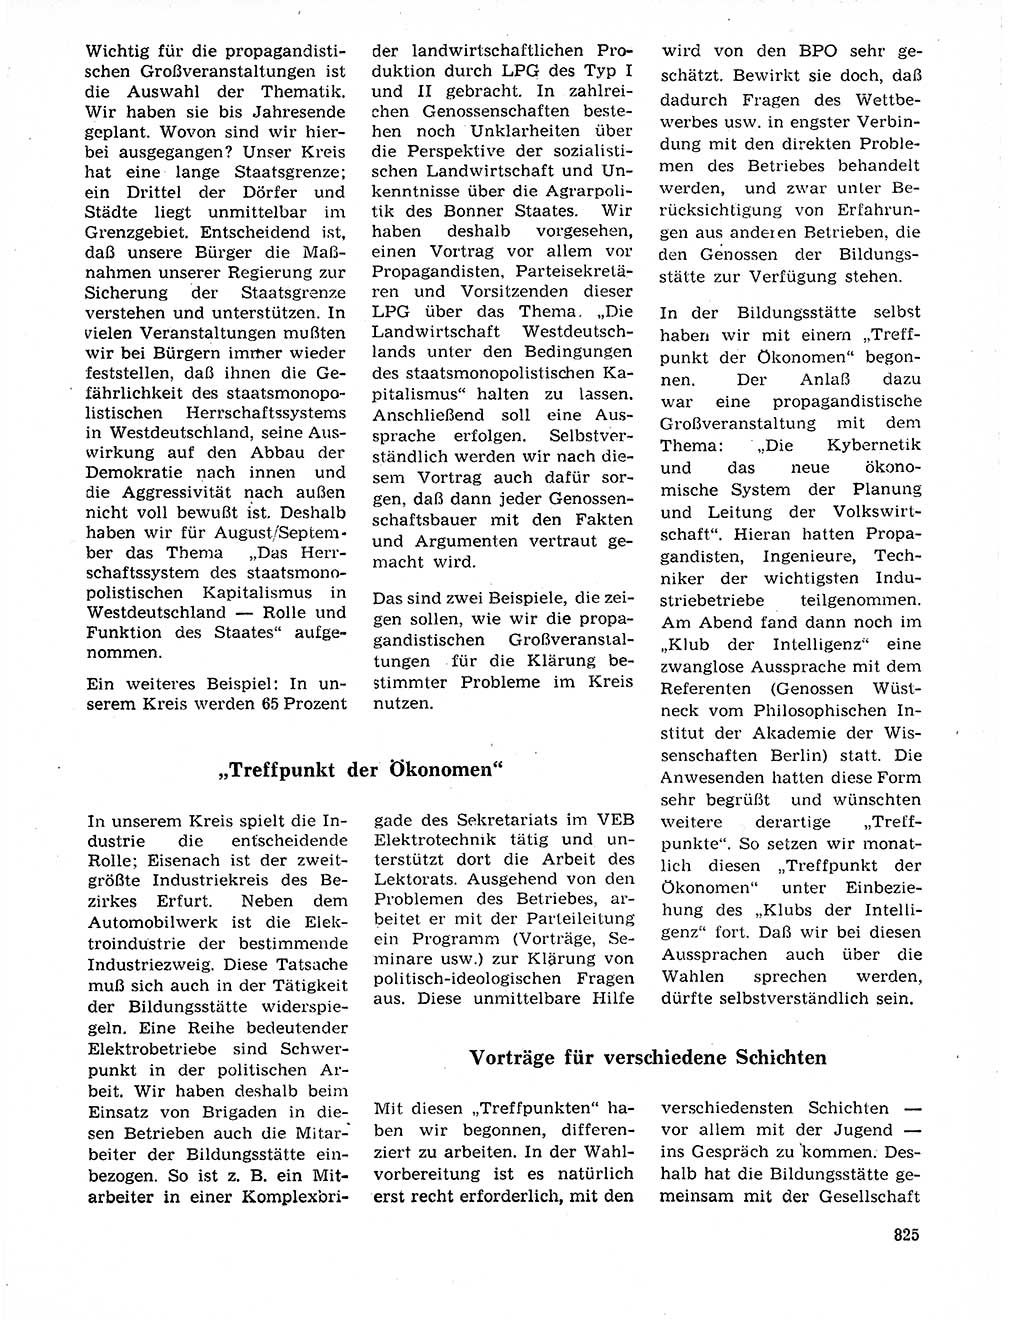 Neuer Weg (NW), Organ des Zentralkomitees (ZK) der SED (Sozialistische Einheitspartei Deutschlands) für Fragen des Parteilebens, 20. Jahrgang [Deutsche Demokratische Republik (DDR)] 1965, Seite 809 (NW ZK SED DDR 1965, S. 809)